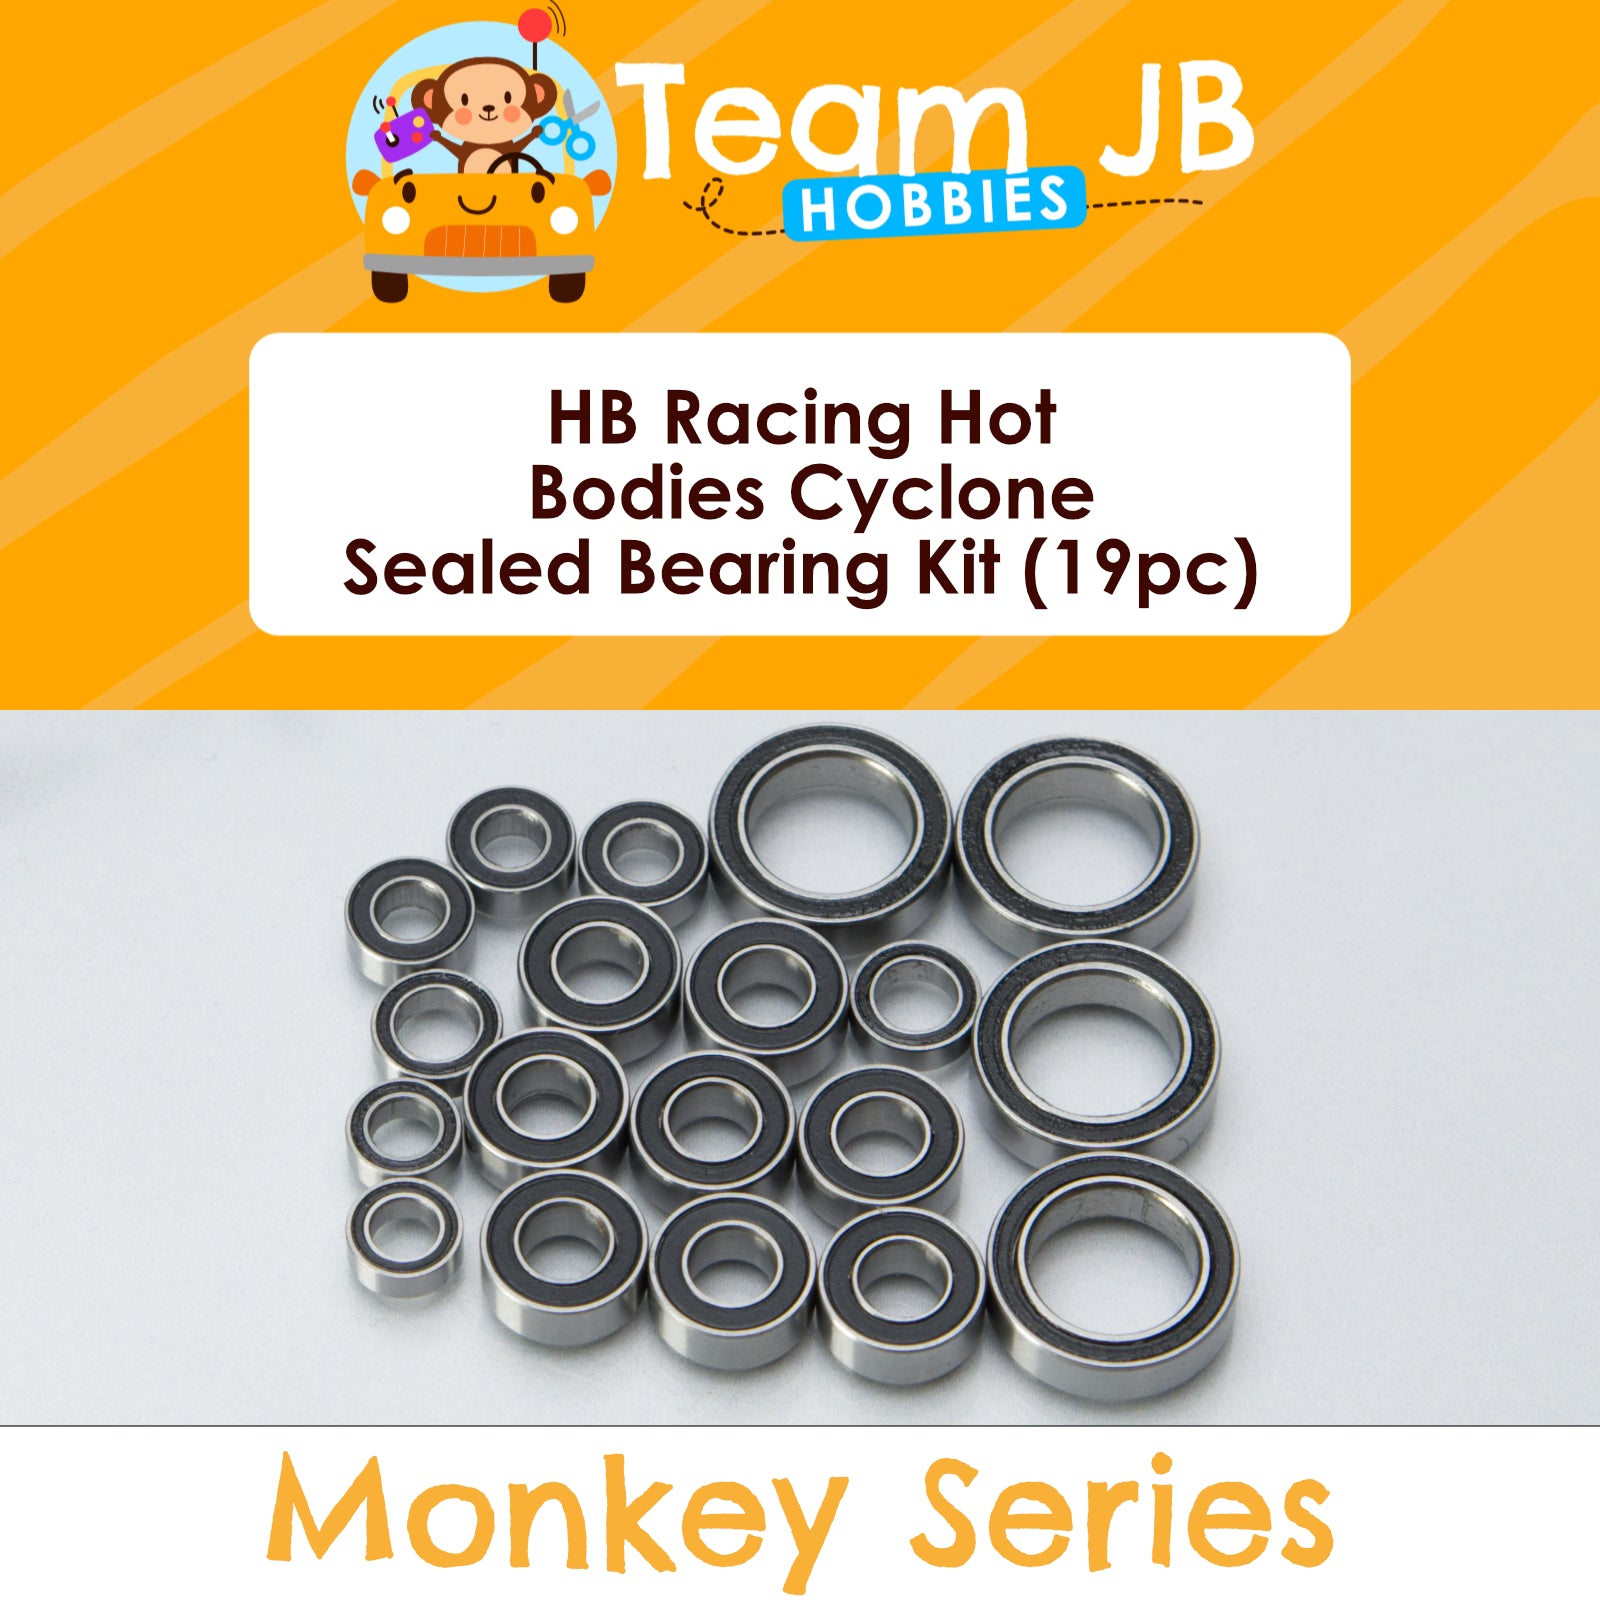 HB Racing Hot Bodies Cyclone - Sealed Bearing Kit